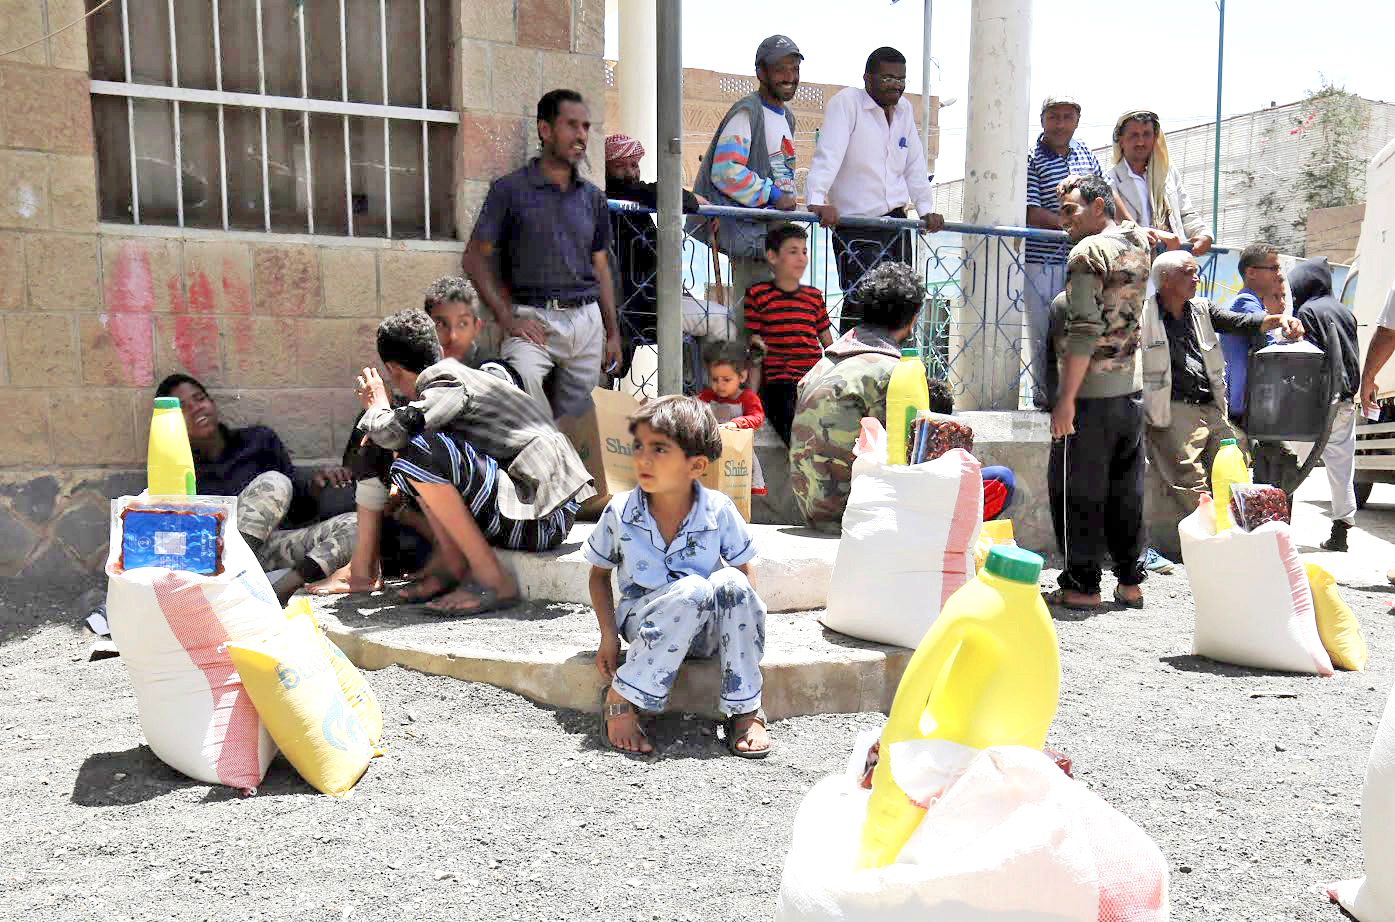 العيد في اليمن محاط بالجراح والألم

الأطفال بلا ملابس جديدة والبيوت يكسوها الحزن